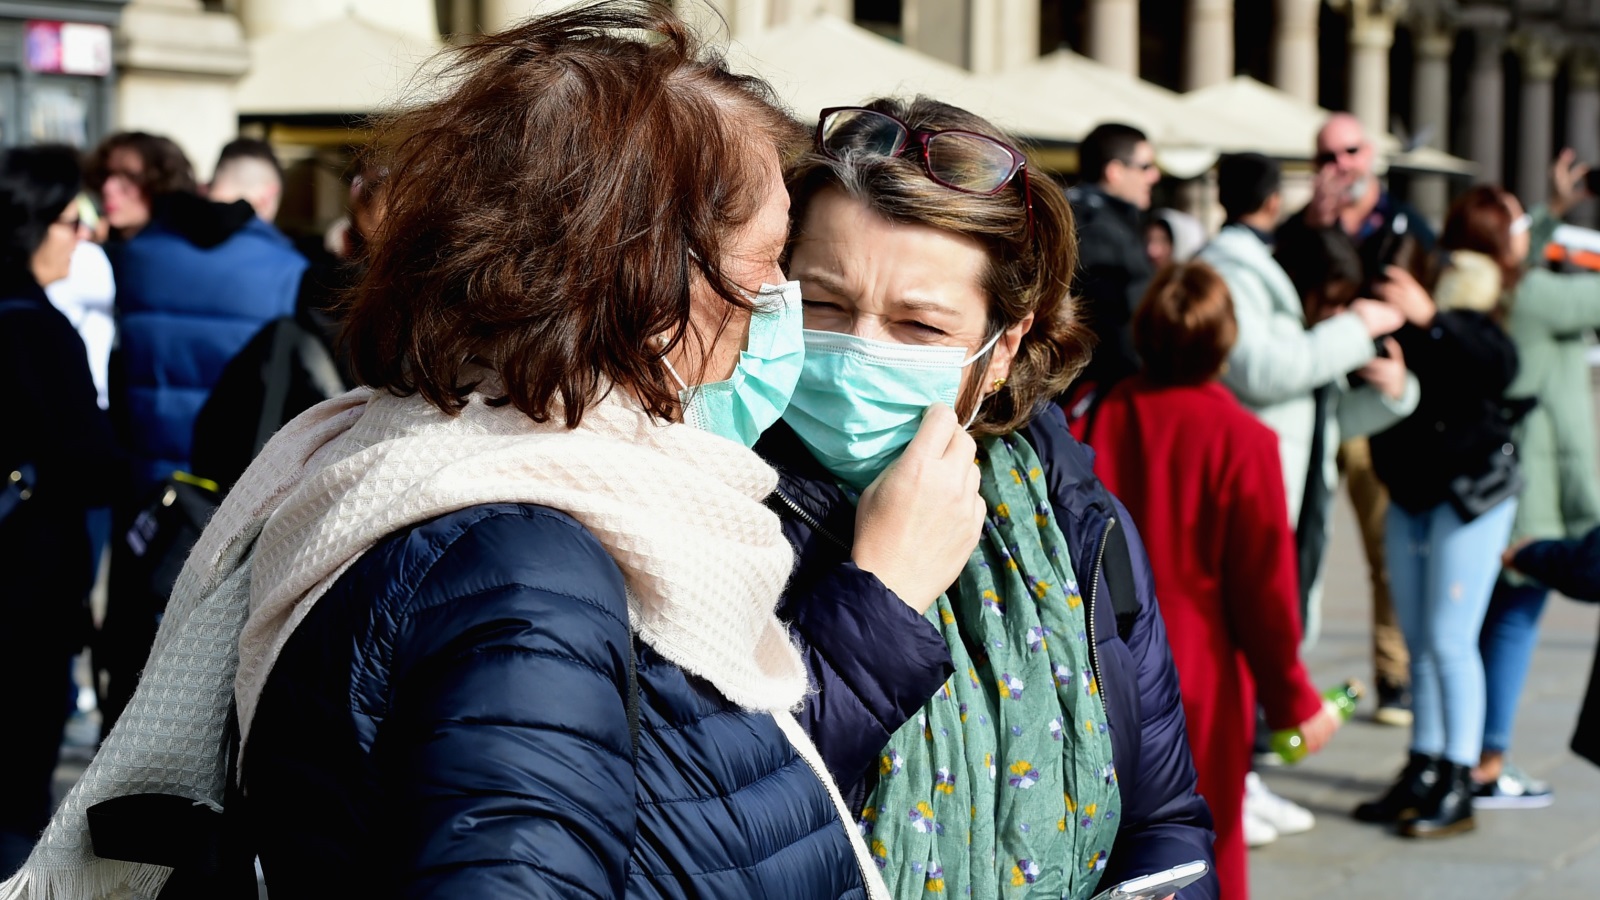 ‪سيدتان تضعان قناعين في مدينة ميلانو بإيطاليا التي تشهد تفشيا لفيروس كورونا‬ (الأناضول)